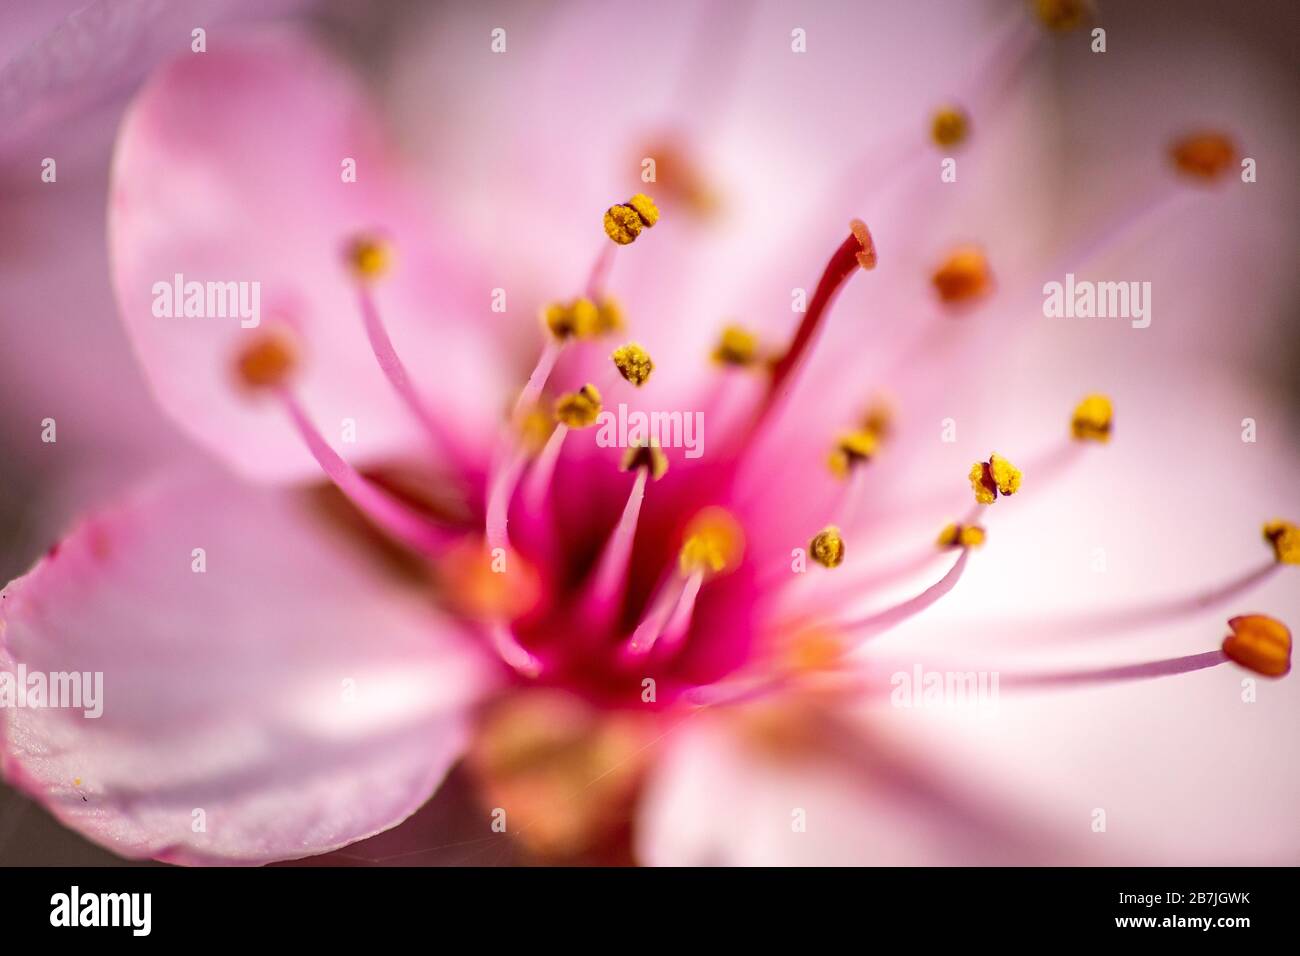 Wunderschönes Makrobild der Blume des prunus Cerasifera, das in den Monaten März und April mit wunderschönen violetten Pinktönen blüht Stockfoto